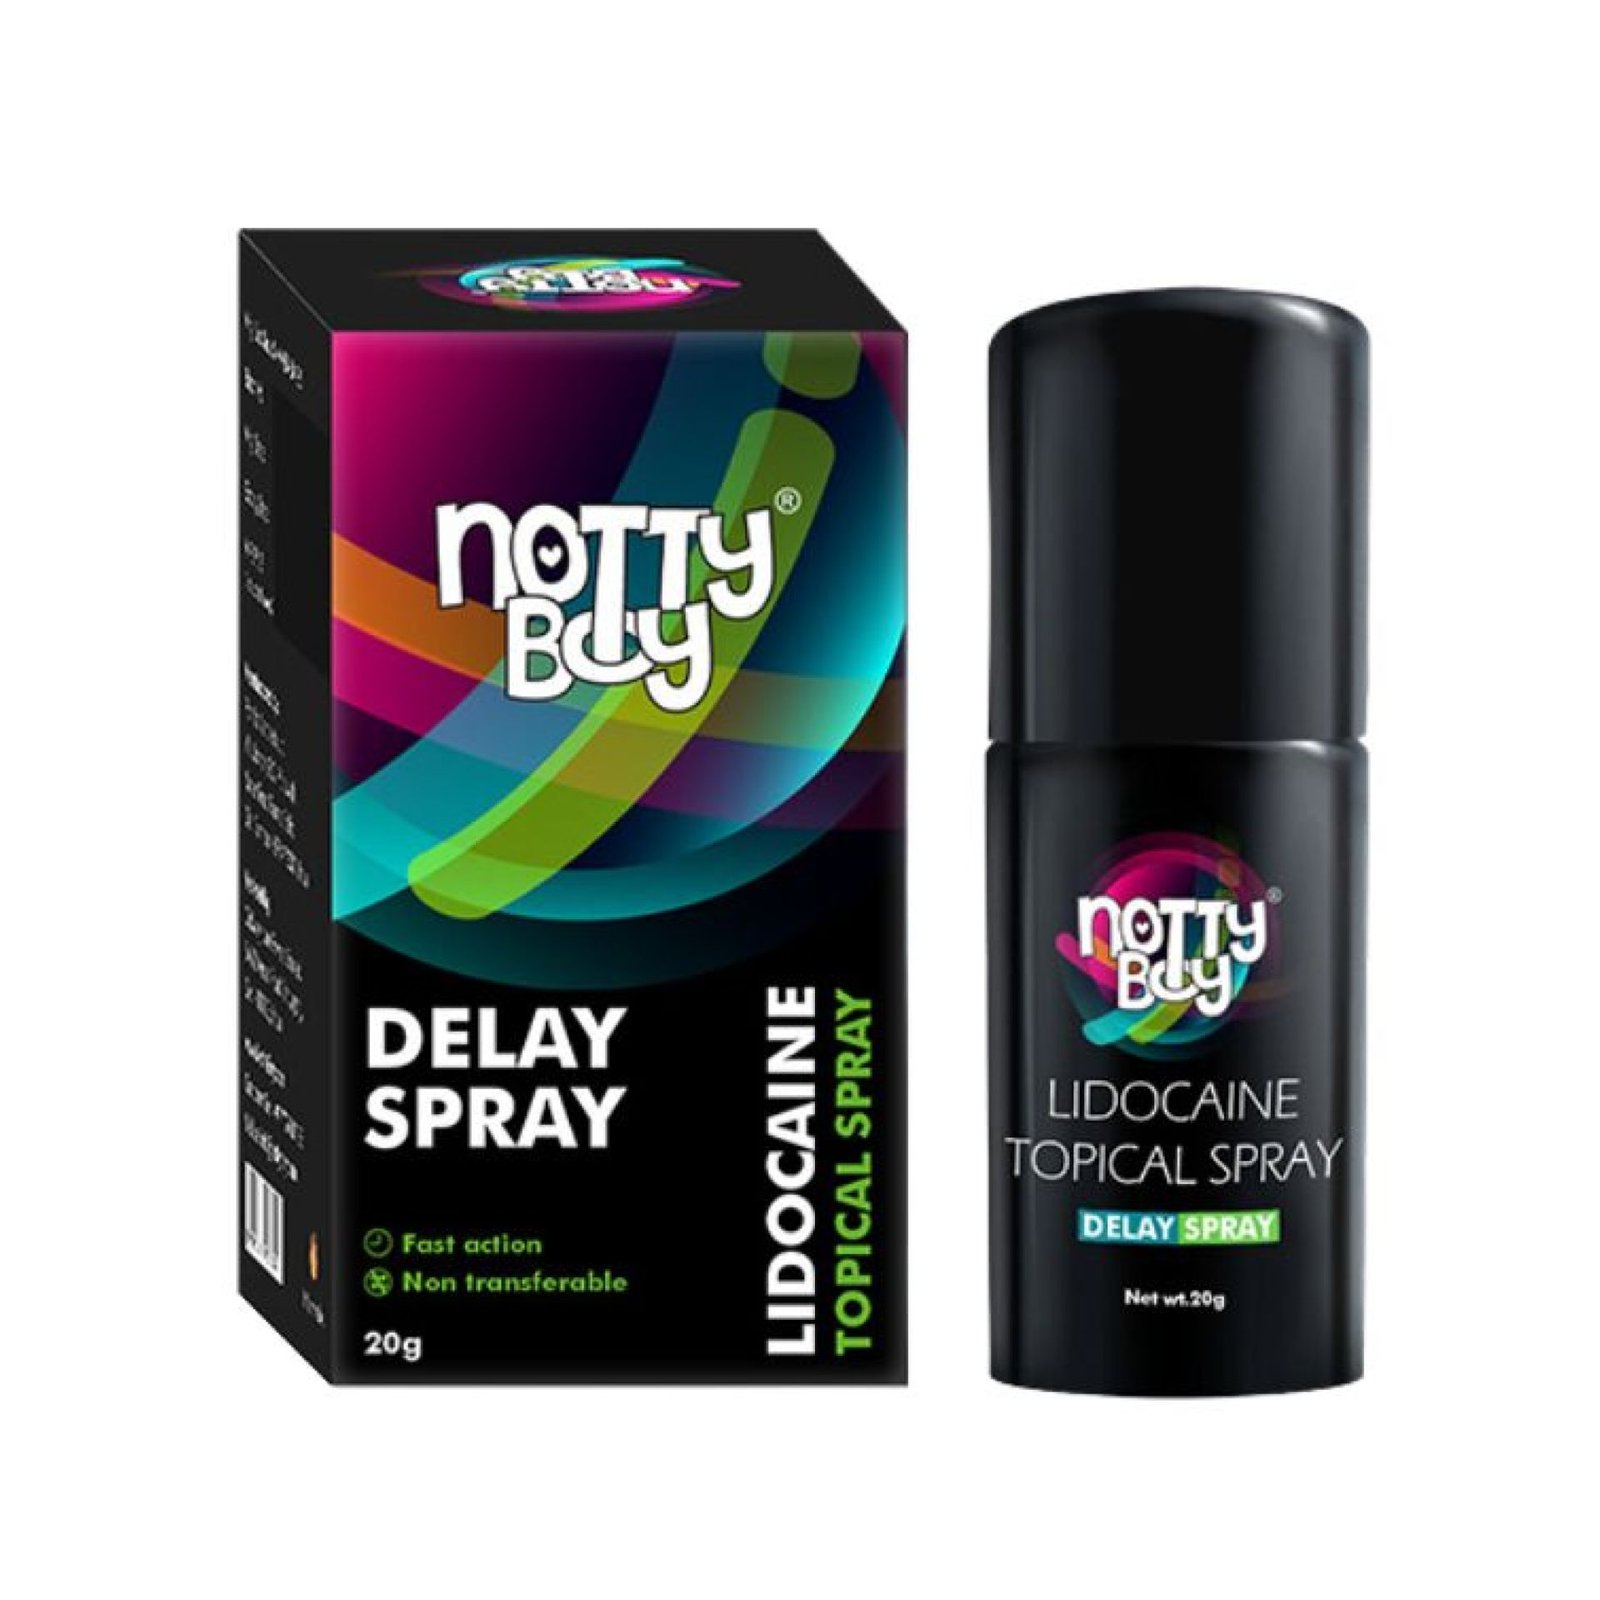 NottyBoy Lidocaine Delay Spray for Men - 20g